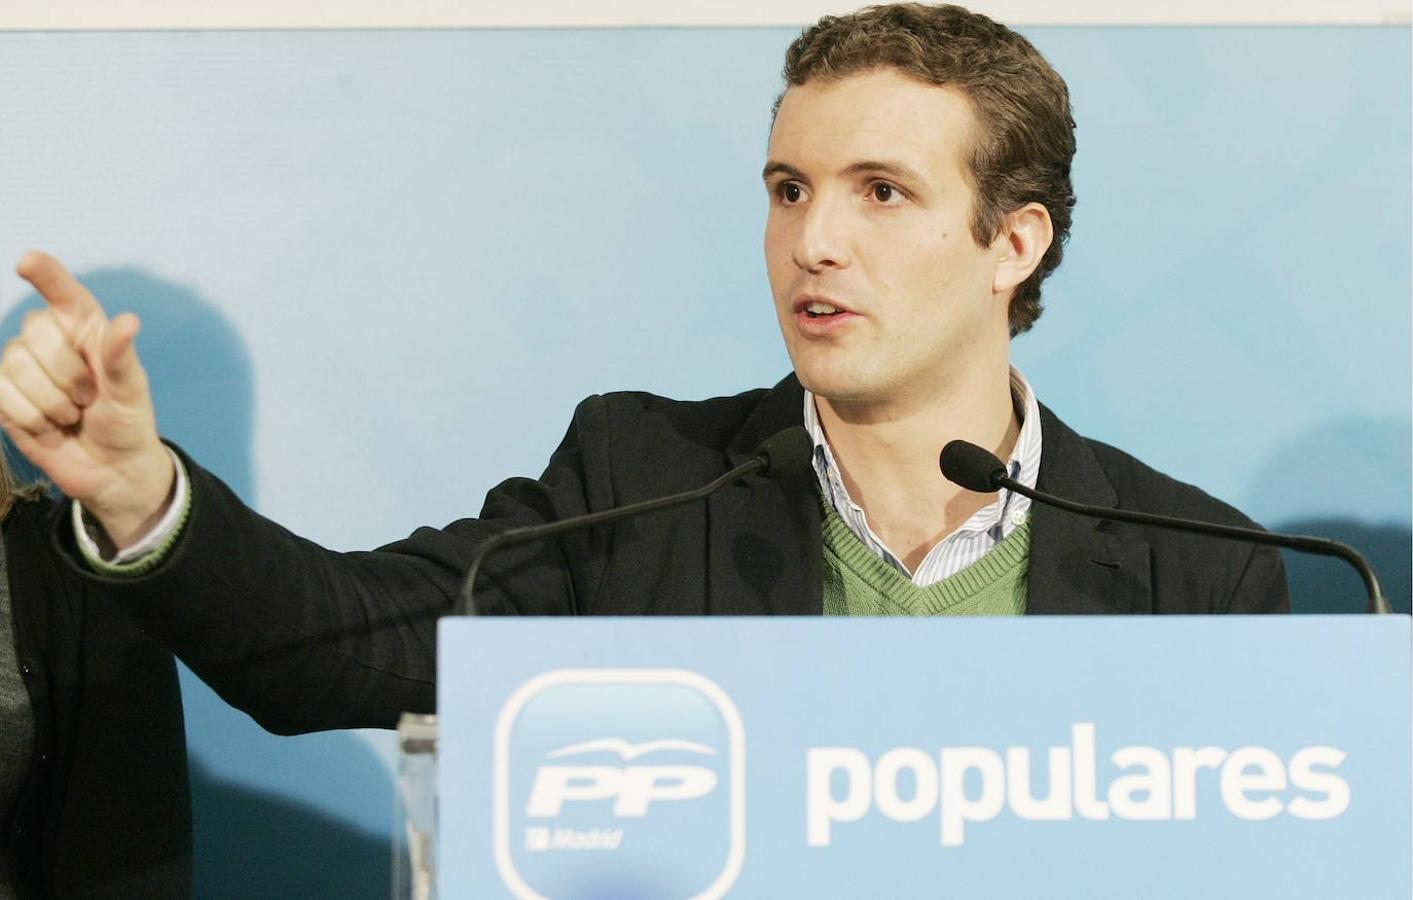 Pablo Casado cuando era presidente de nuevas generaciones del Partido Popular en el año 2008.